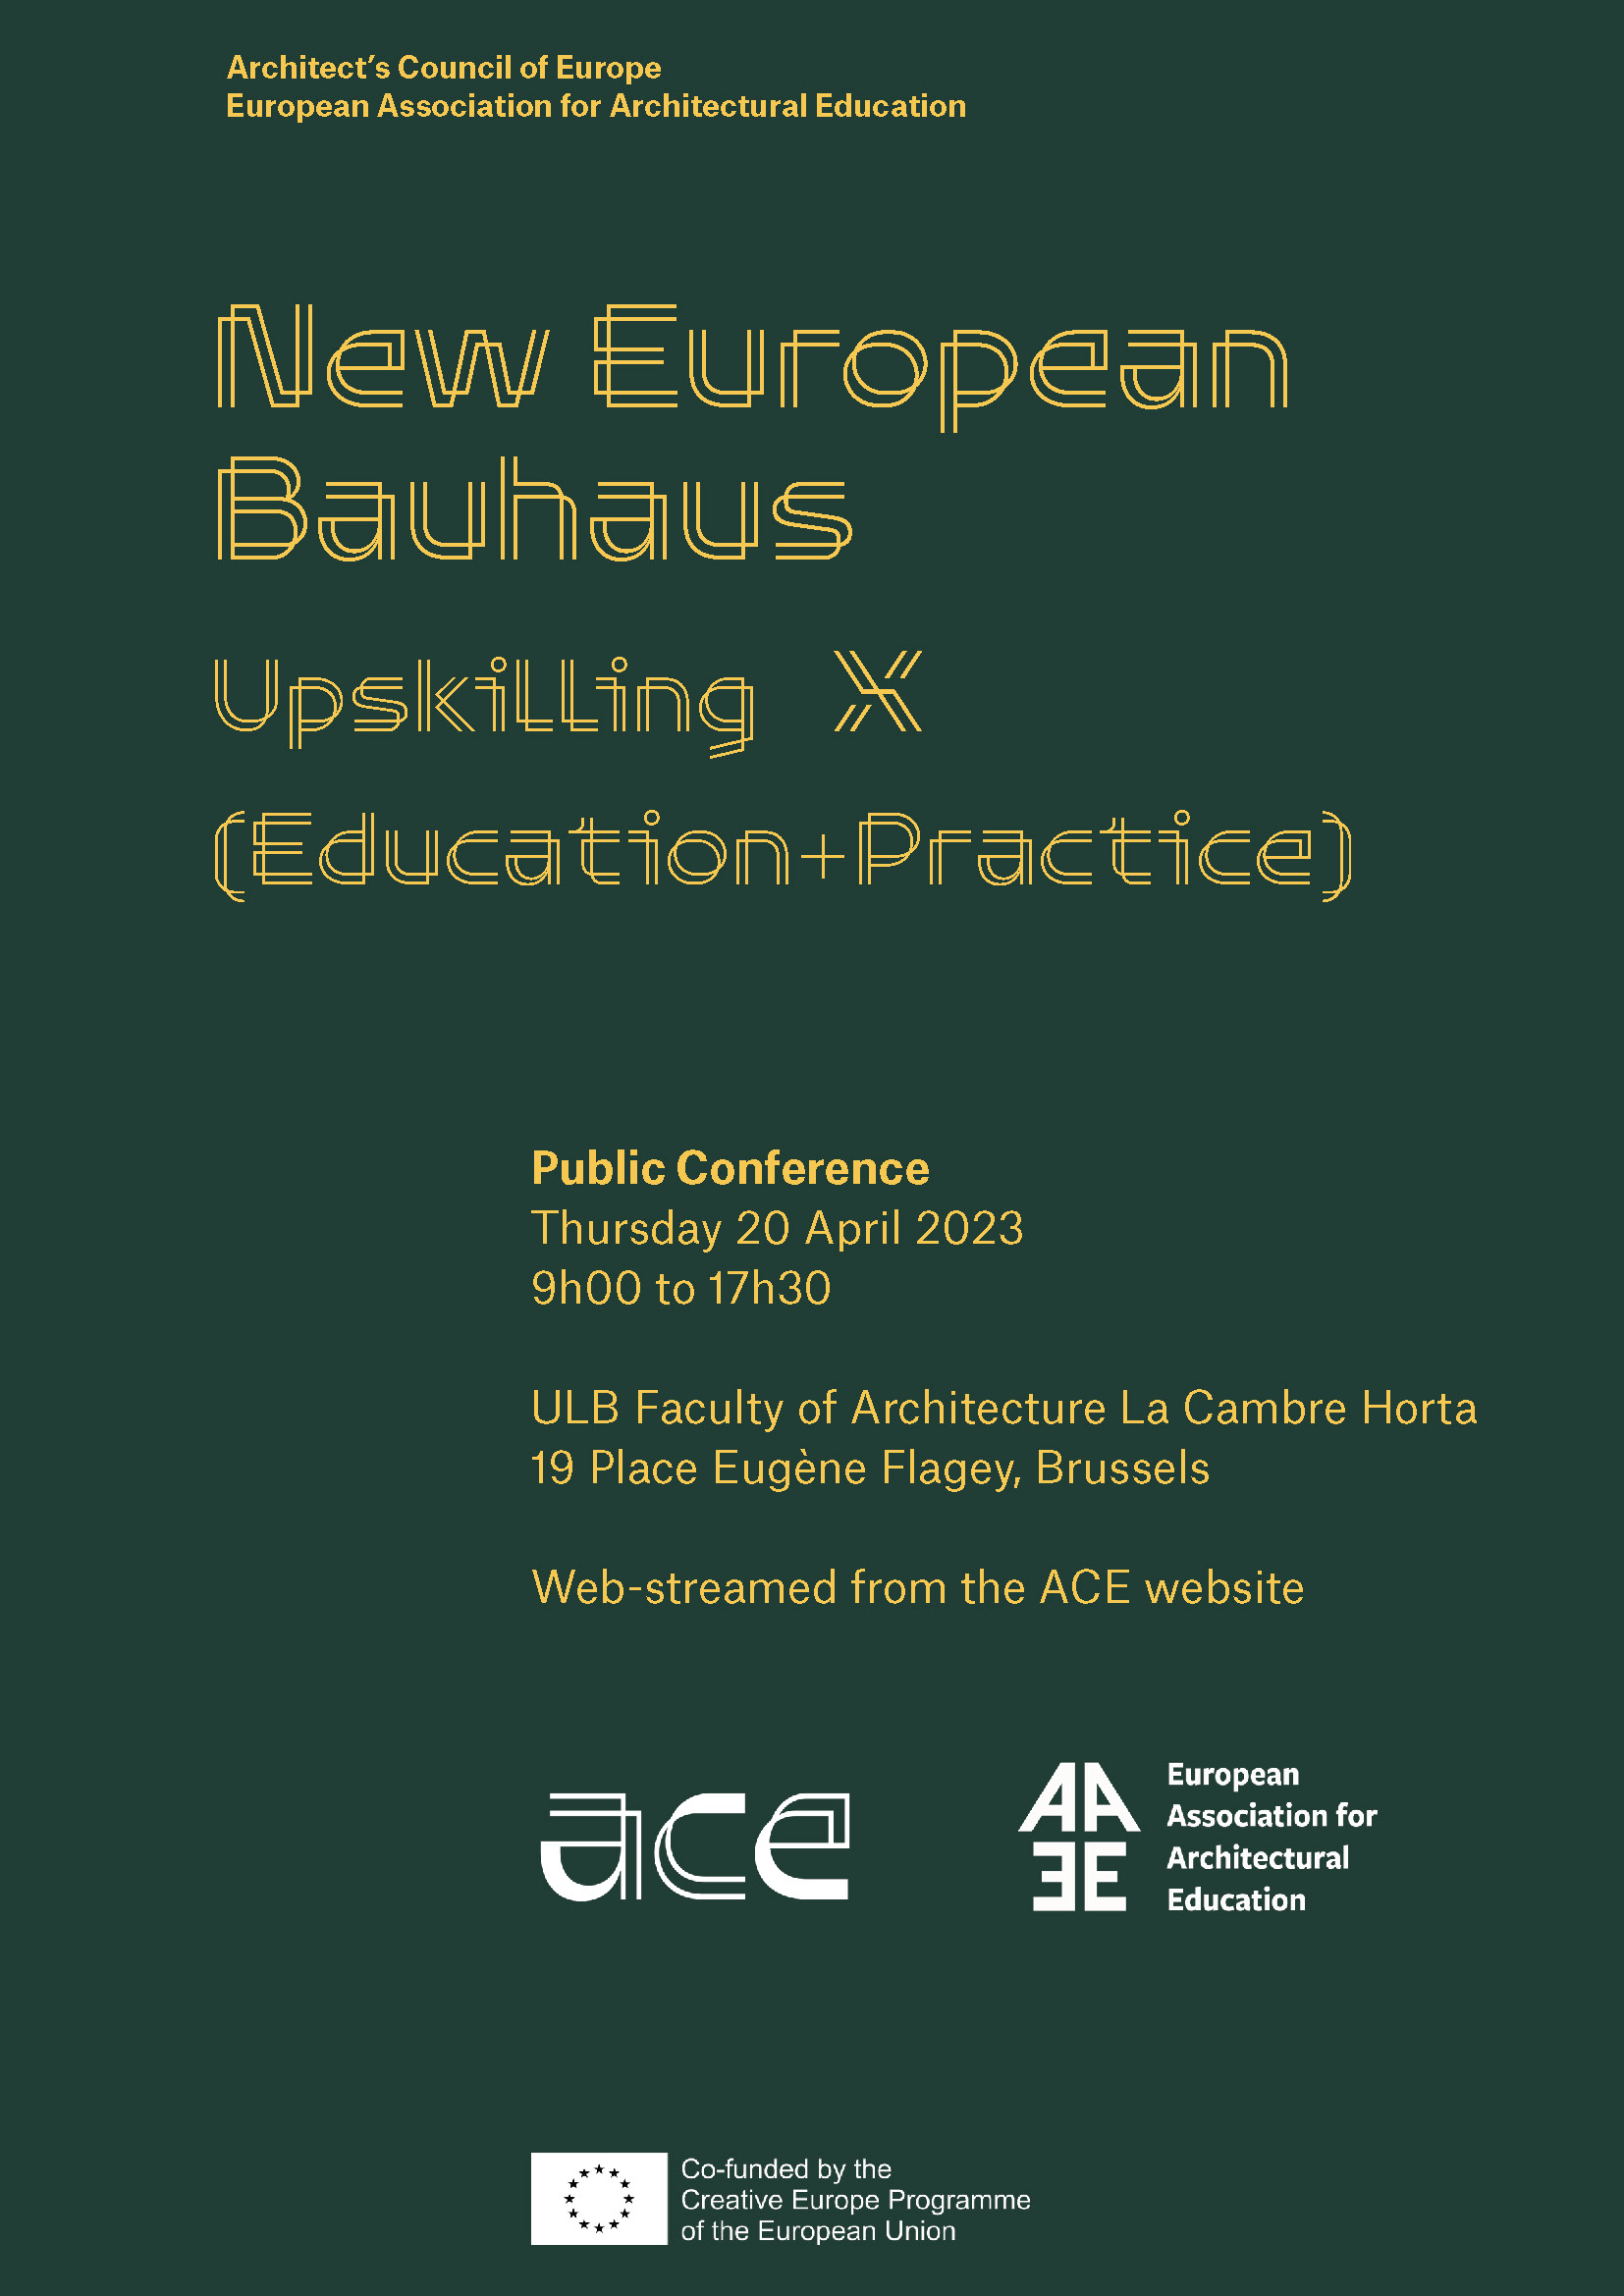 Διαθέσιμο το βίντεο του συνεδρίου Upskilling x (Education + Practice) για την αναβάθμιση της κατάρτισης στις αρχές του Νέου Ευρωπαϊκού Bauhaus (NEB), από τους ACE- EAAE